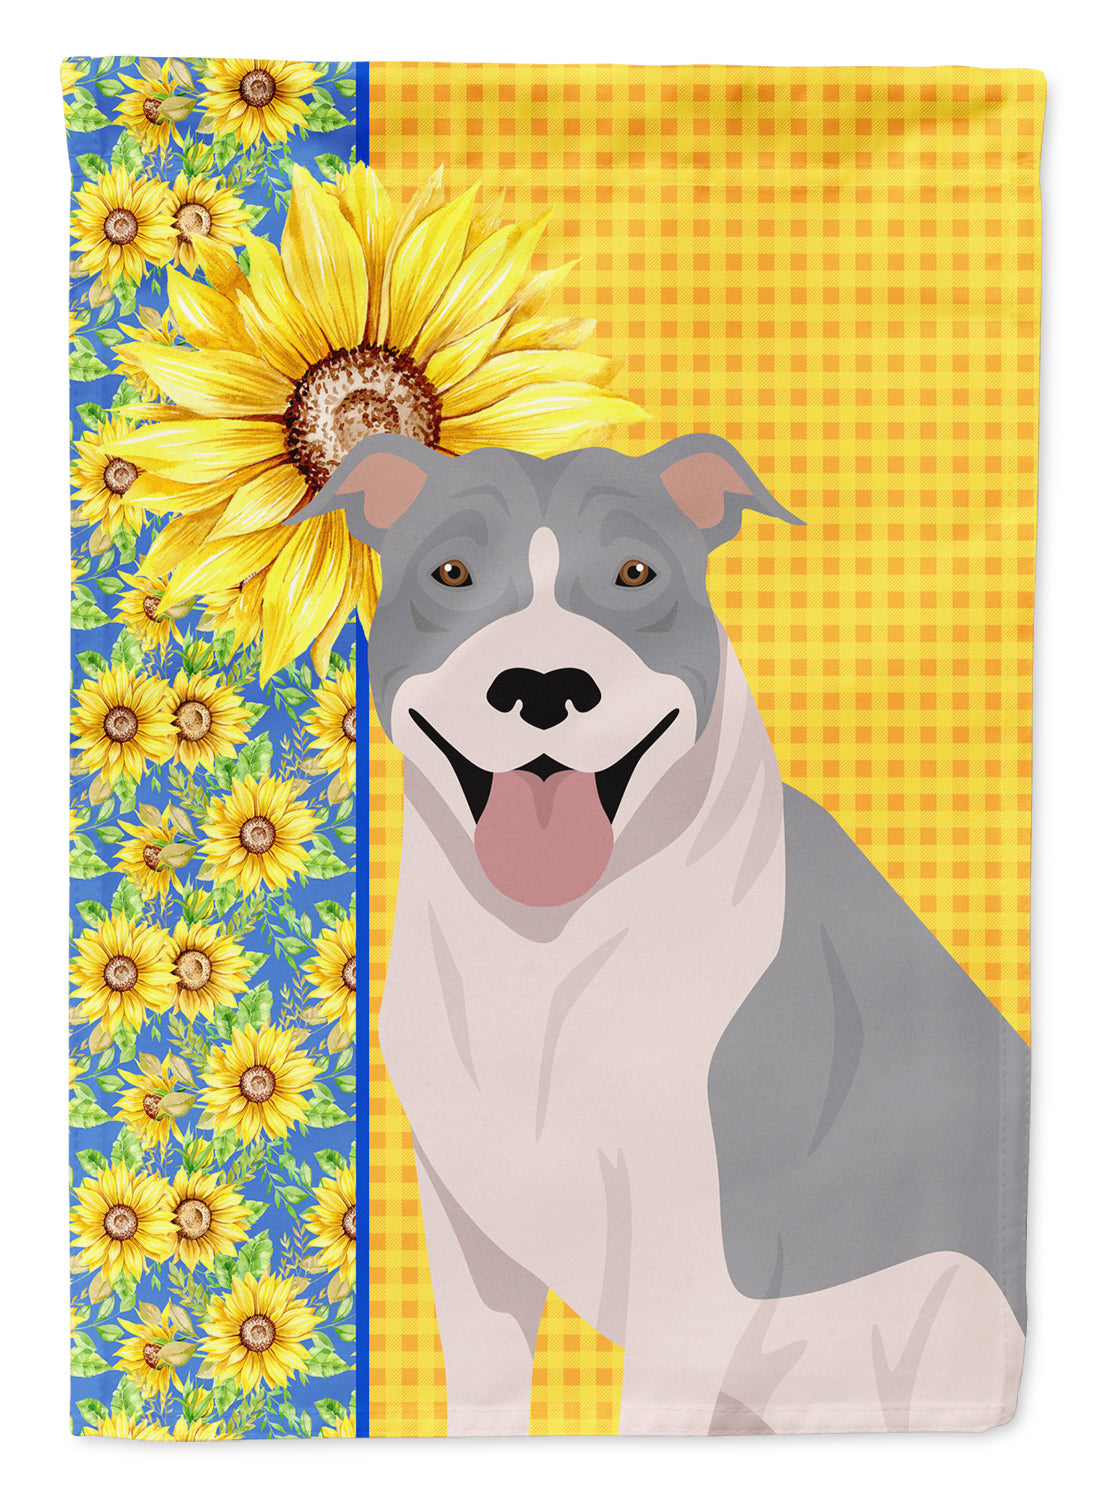 Summer Sunflowers Blue and White Pit Bull Terrier Flag Garden Size